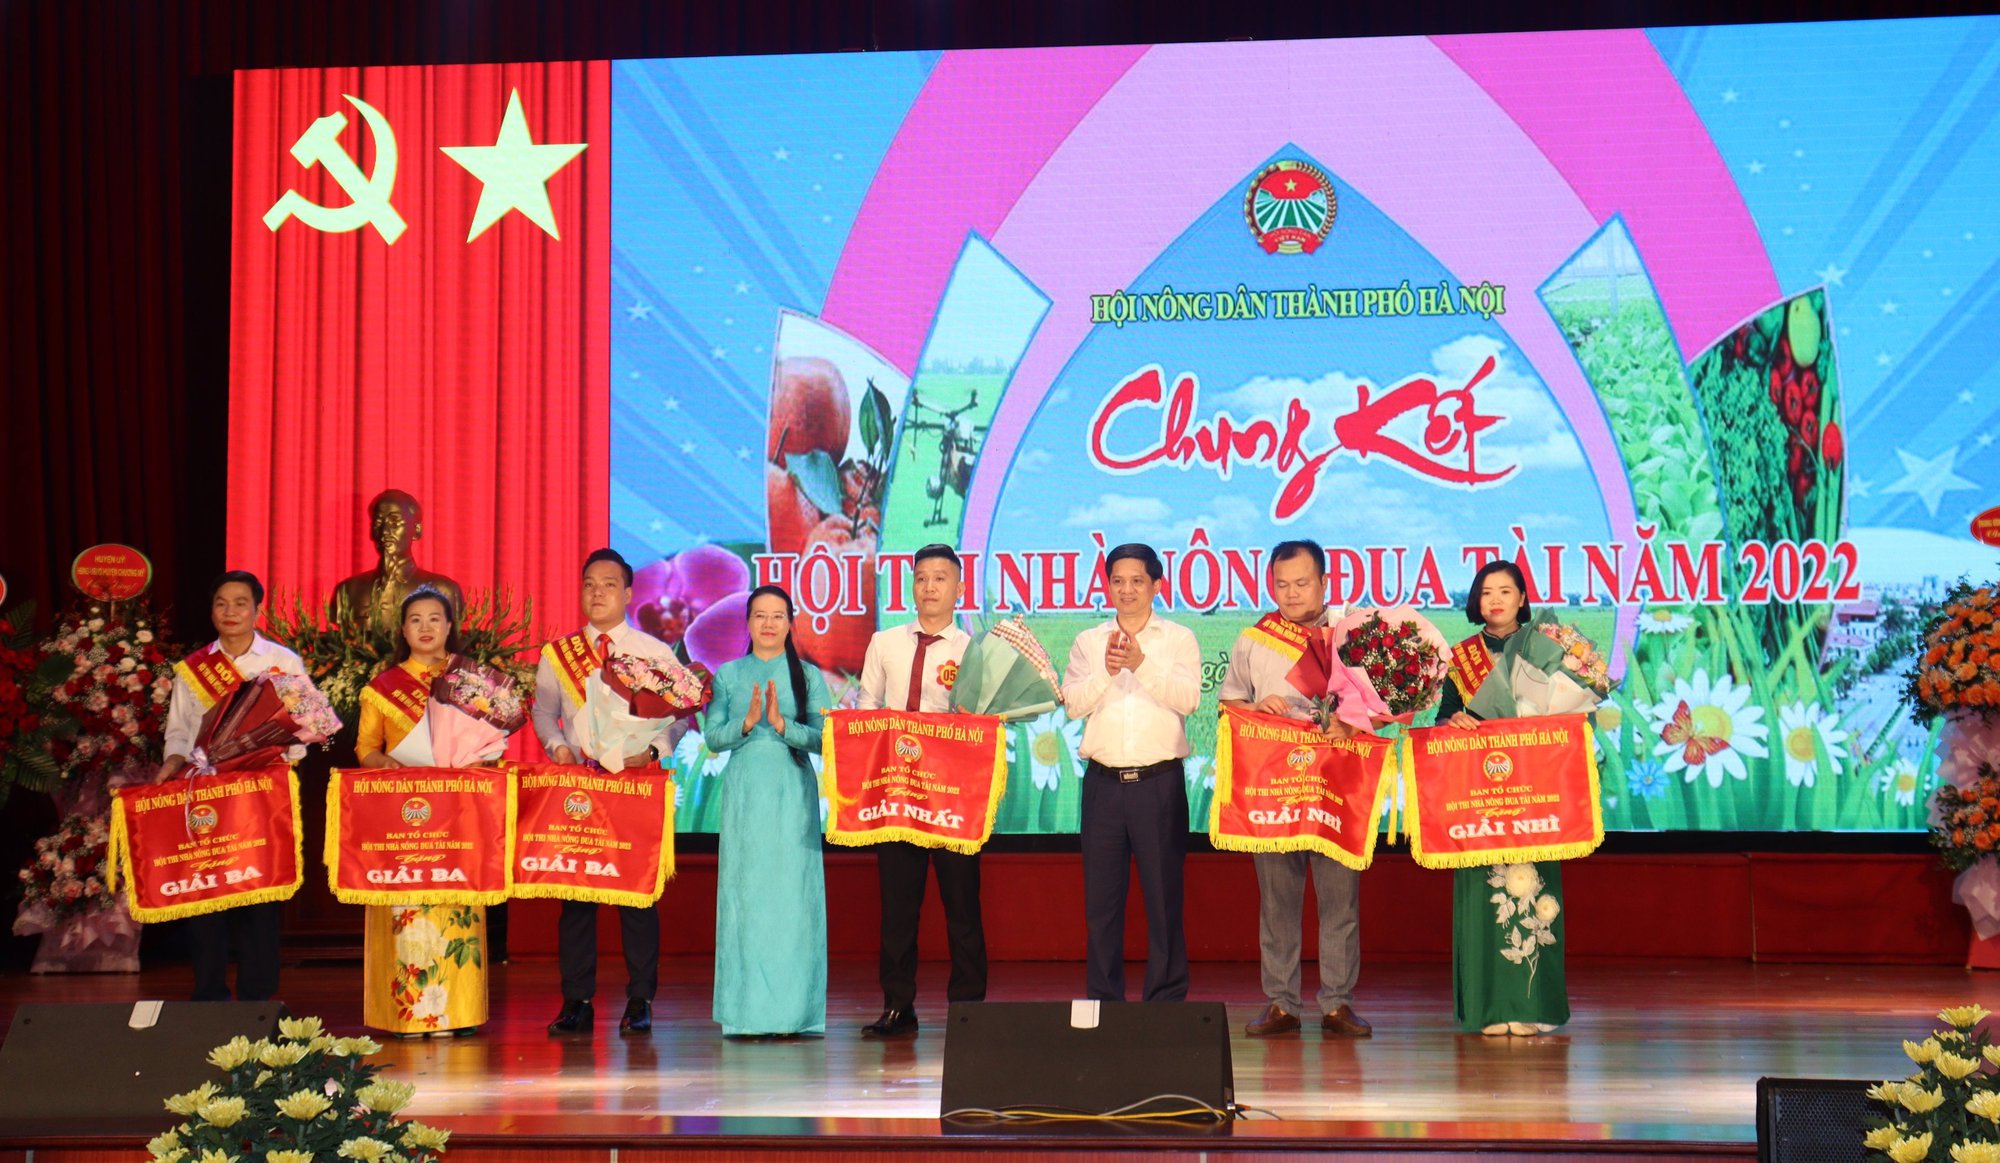 Chung kết Hội thi Nhà nông đua tài Hà Nội năm 2022, Hội Nông dân thị xã Sơn Tây đạt giải Nhất - Ảnh 3.